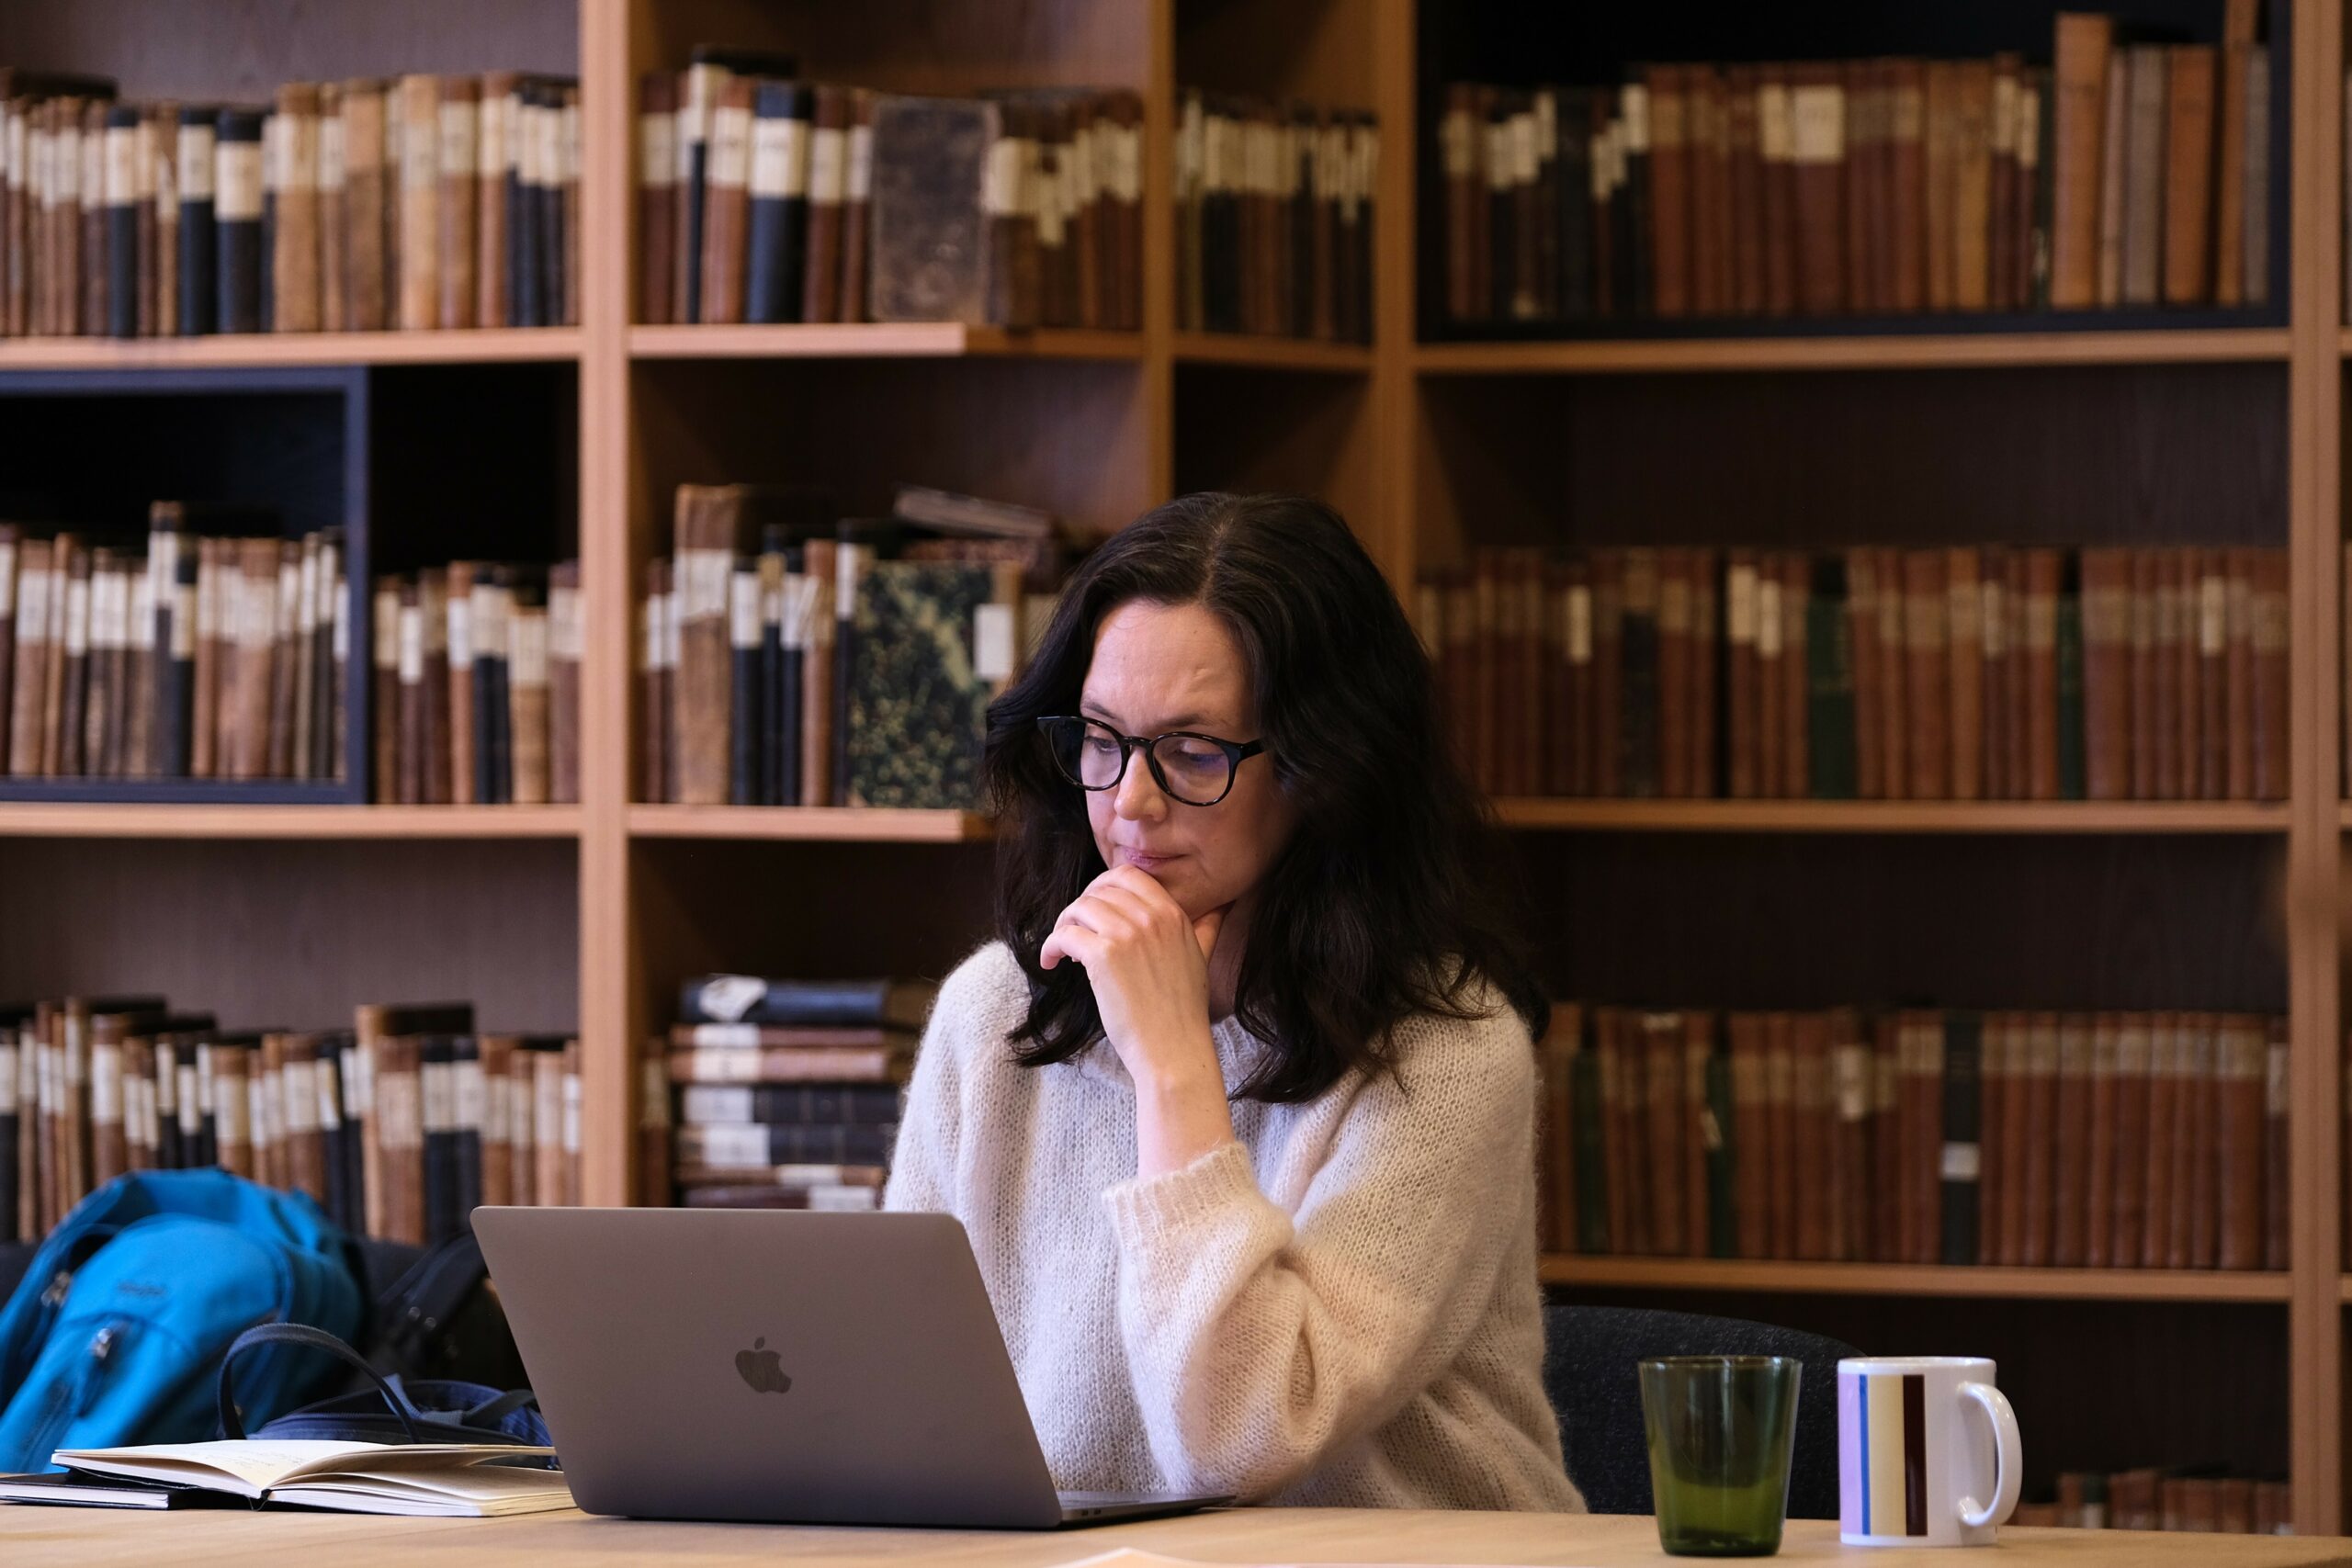 En kvinne i briller og en kremgenser arbeider ved en bærbar datamaskin ved et bibliotekbord med hyller fulle av bøker i bakgrunnen.